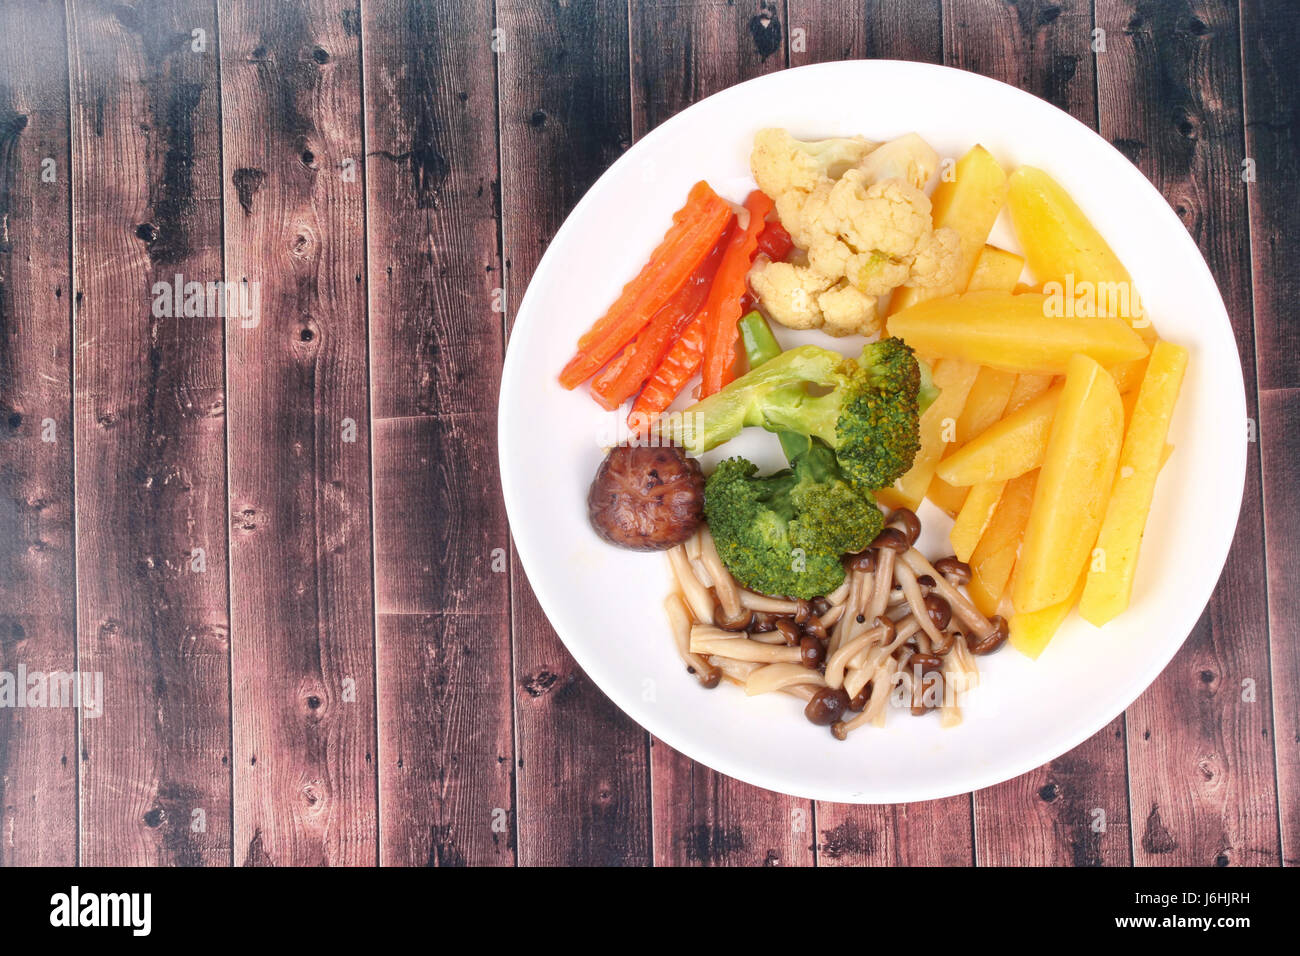 Lebensmittel für die Gesundheit, in Scheiben geschnittene Gebratene Kartoffel und Shimeji Pilz mit gemischtem Gemüse. Kein Fleisch-Rezept. Stockfoto